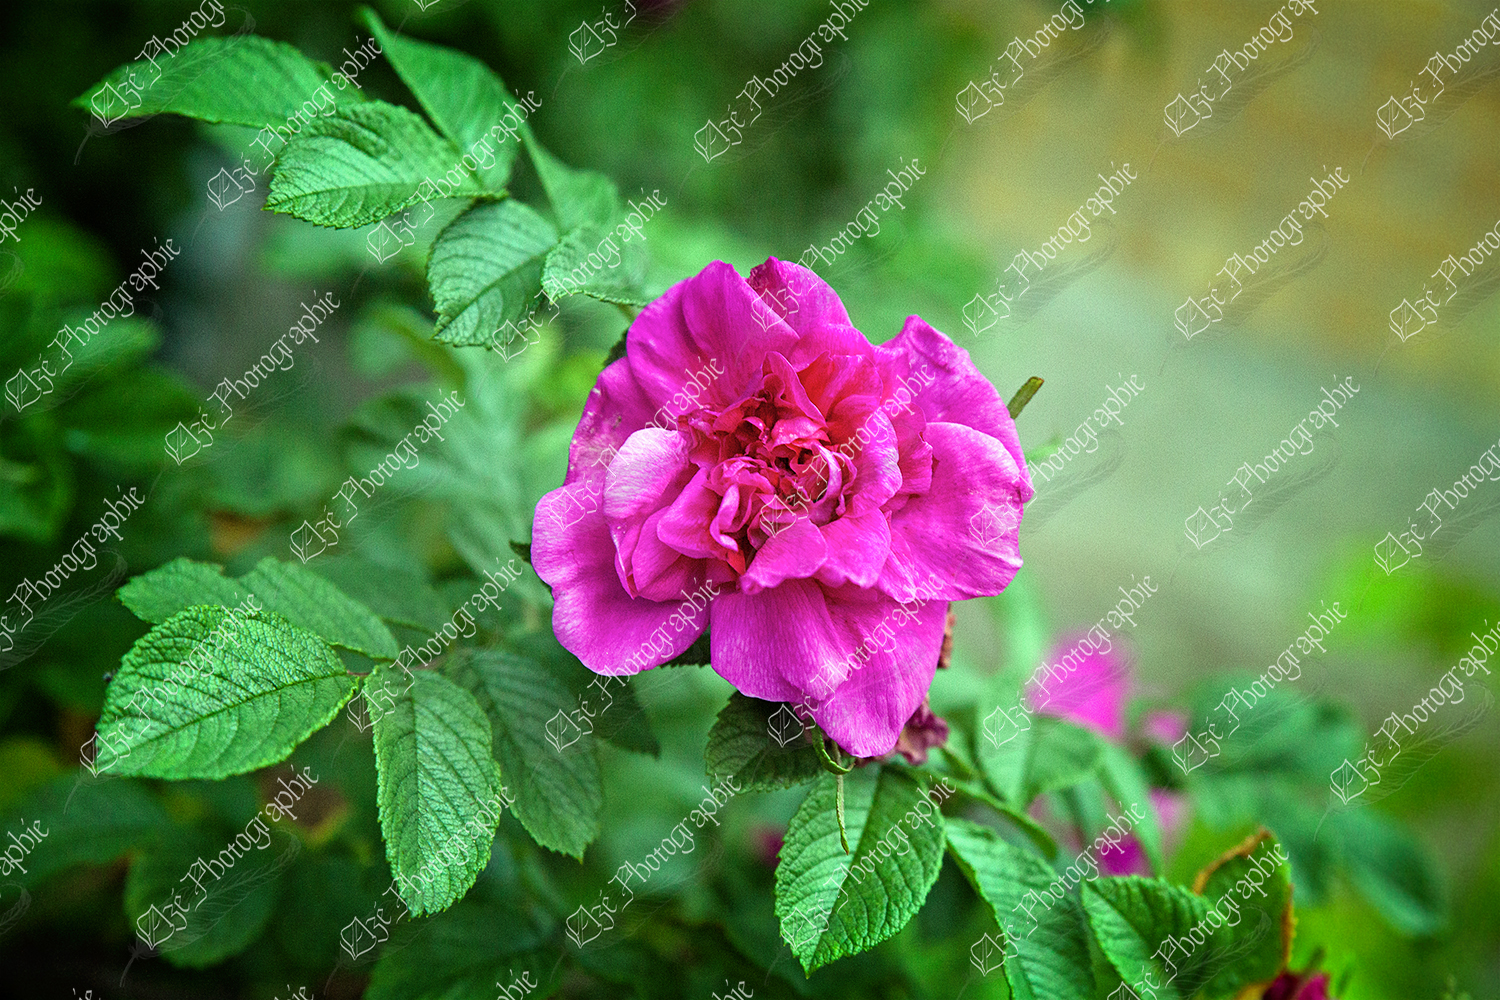 elze_photo_2357_rosier_nervure_fleur_rose_tree_pink